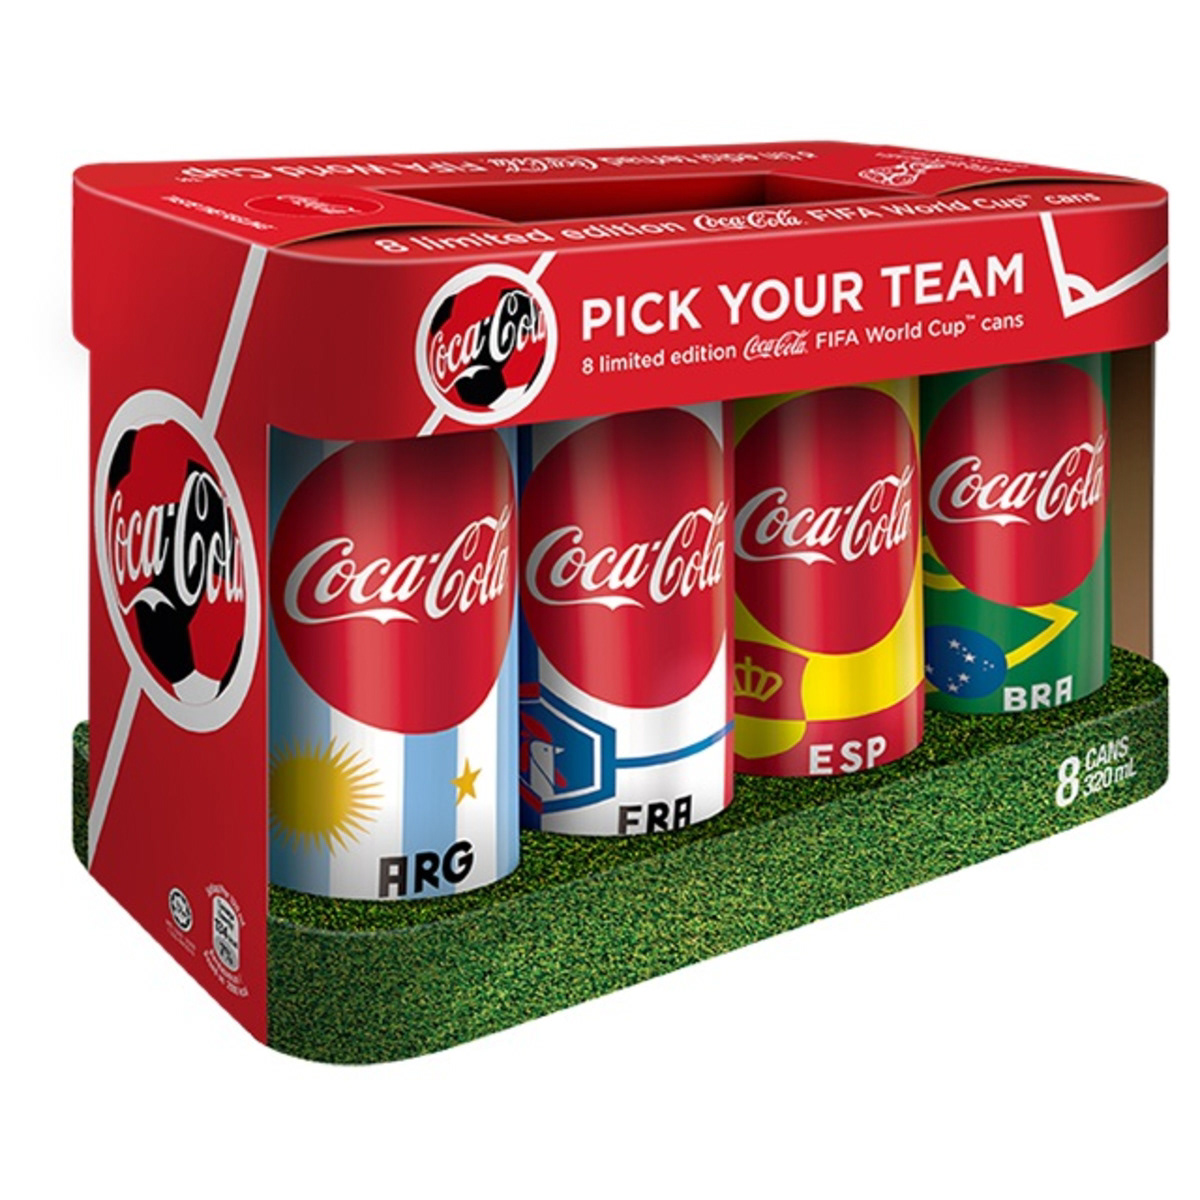 Coca-Cola campaign world cup Russia